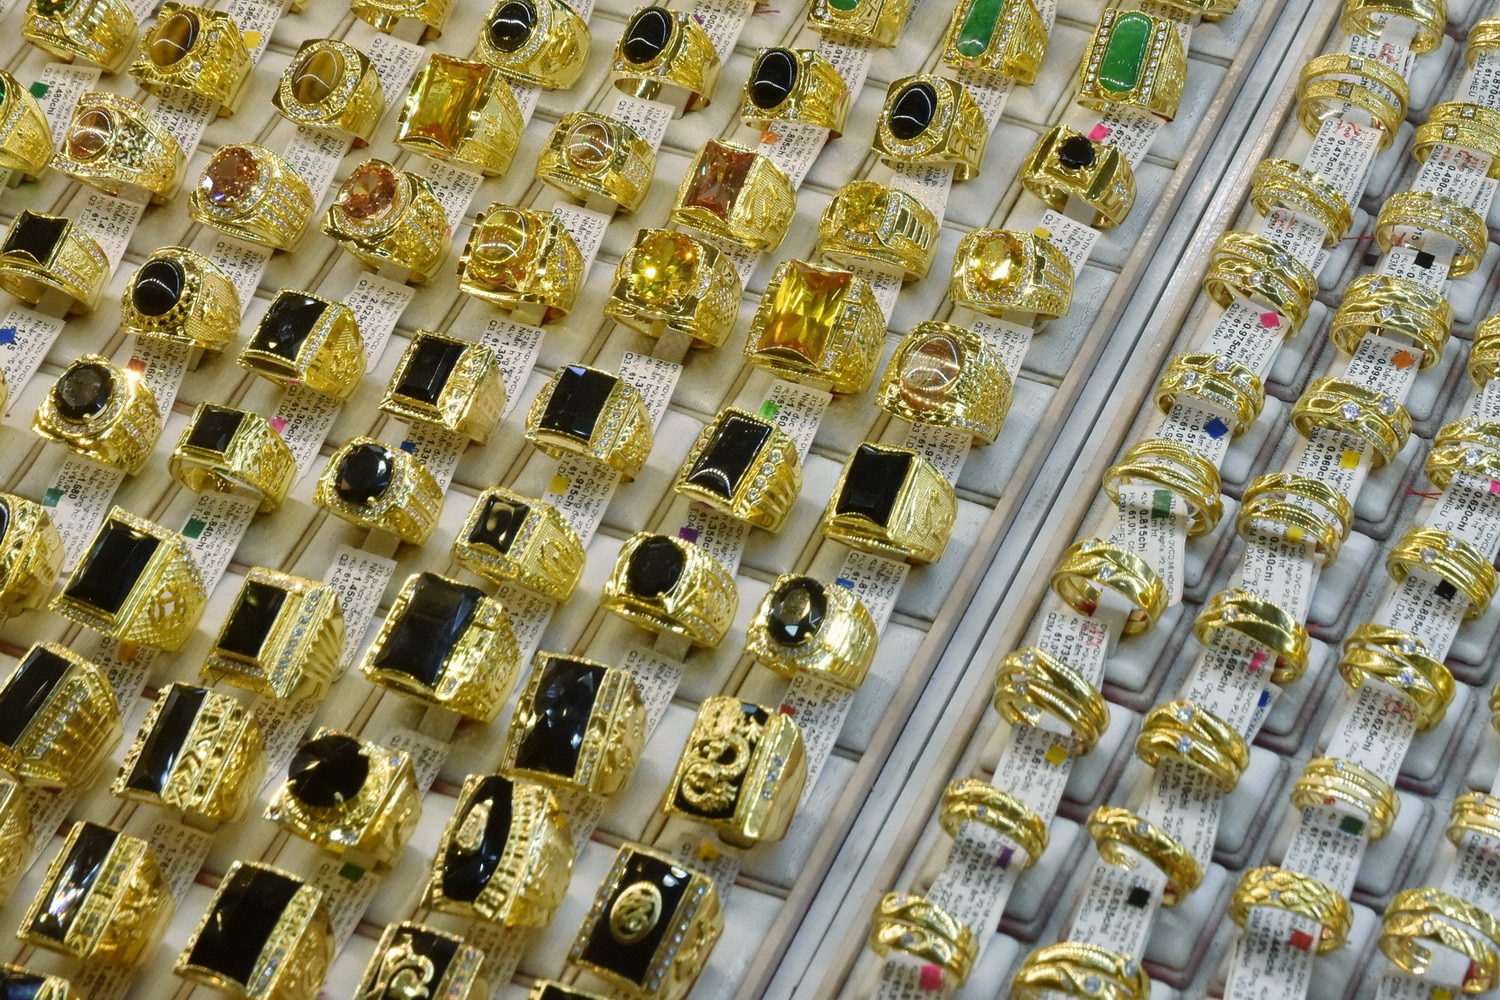 Giá vàng hôm nay 14/6, giá vàng nhẫn 9999 tăng nhẹ 100 nghìn đồng. Danh sách các điểm bán vàng miếng mới của Agribank.